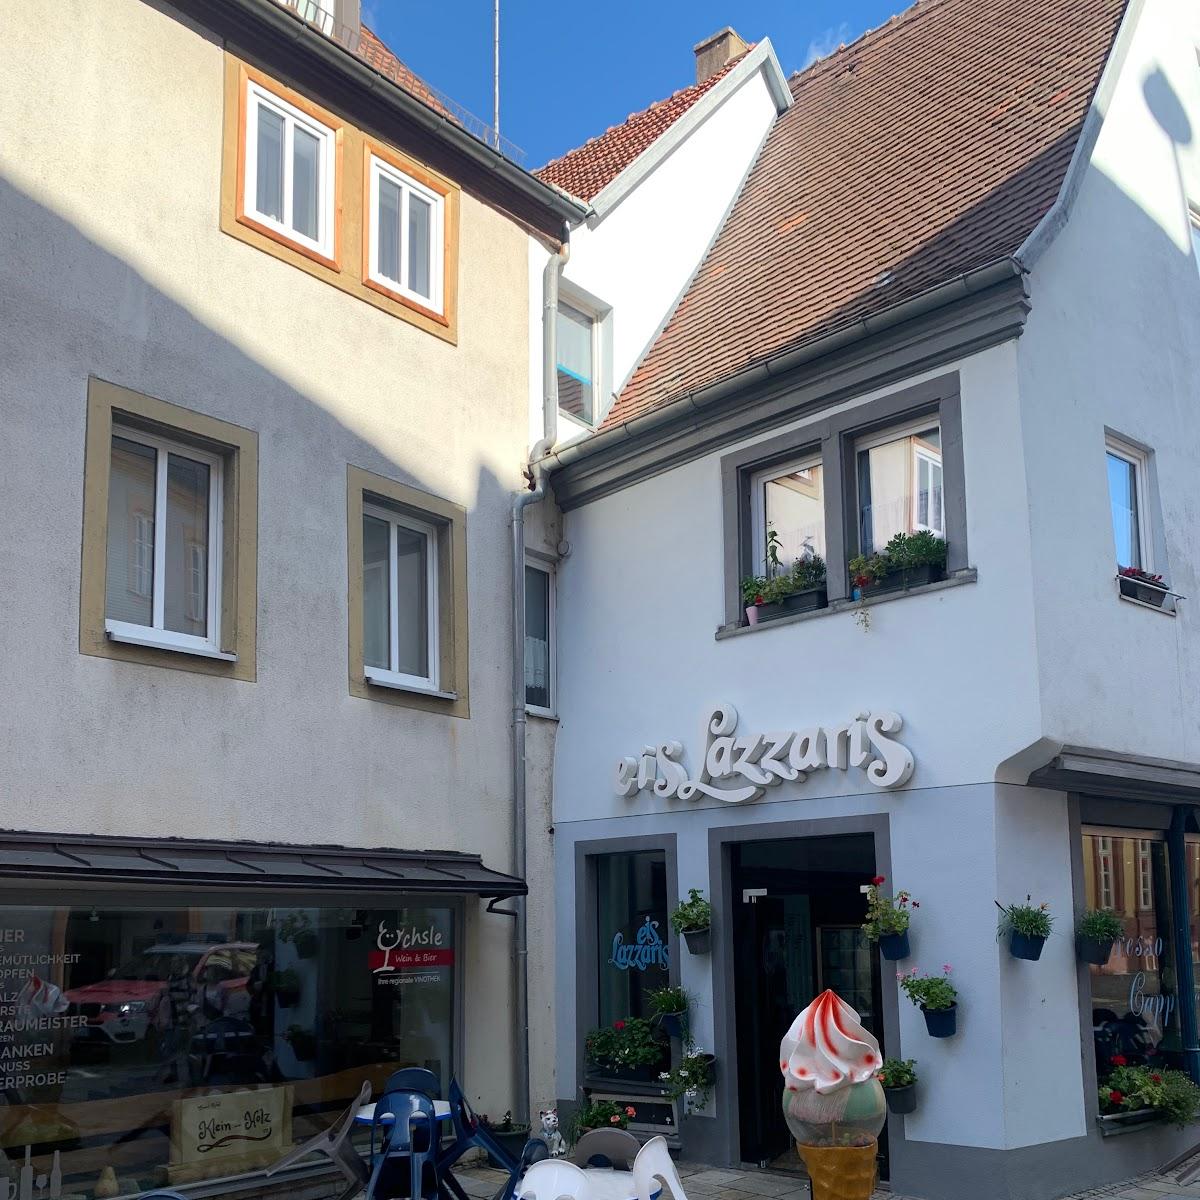 Restaurant "Eiscafé Lazzaris" in Ochsenfurt